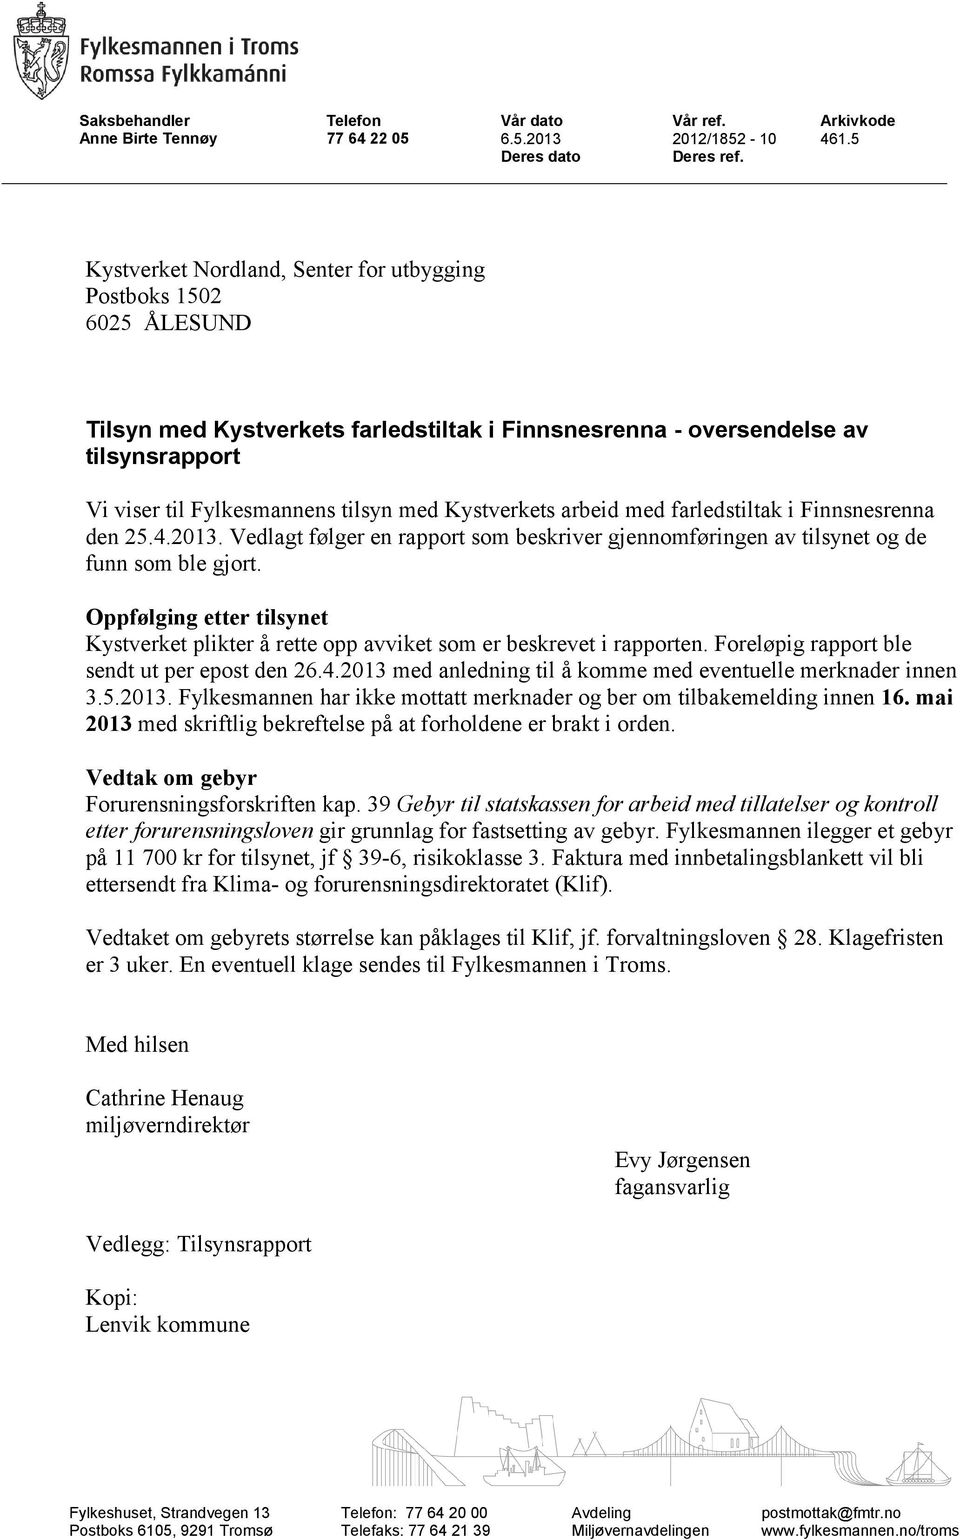 Kystverkets arbeid med farledstiltak i Finnsnesrenna den 25.4.2013. Vedlagt følger en rapport som beskriver gjennomføringen av tilsynet og de funn som ble gjort.